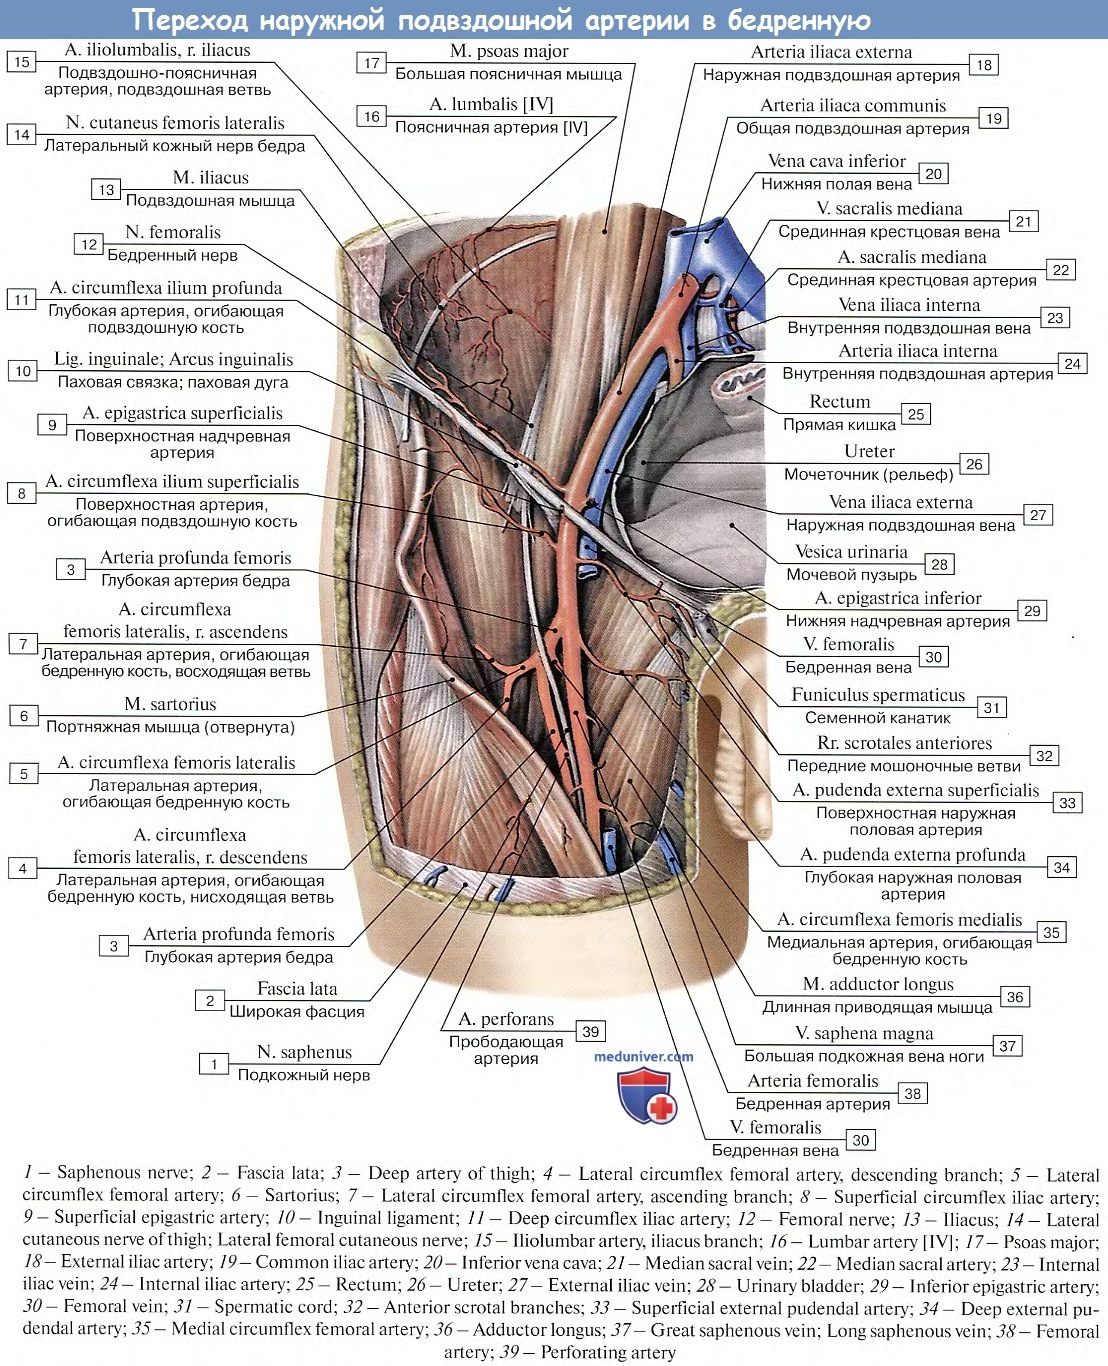 Воспаление внутренней оболочки вены латынь. Нижняя надчревная артерия. Глубокая артерия огибающая подвздошную кость. Наружная подвздошная артерия и Вена. Анатомия общей подвздошной артерии топография.